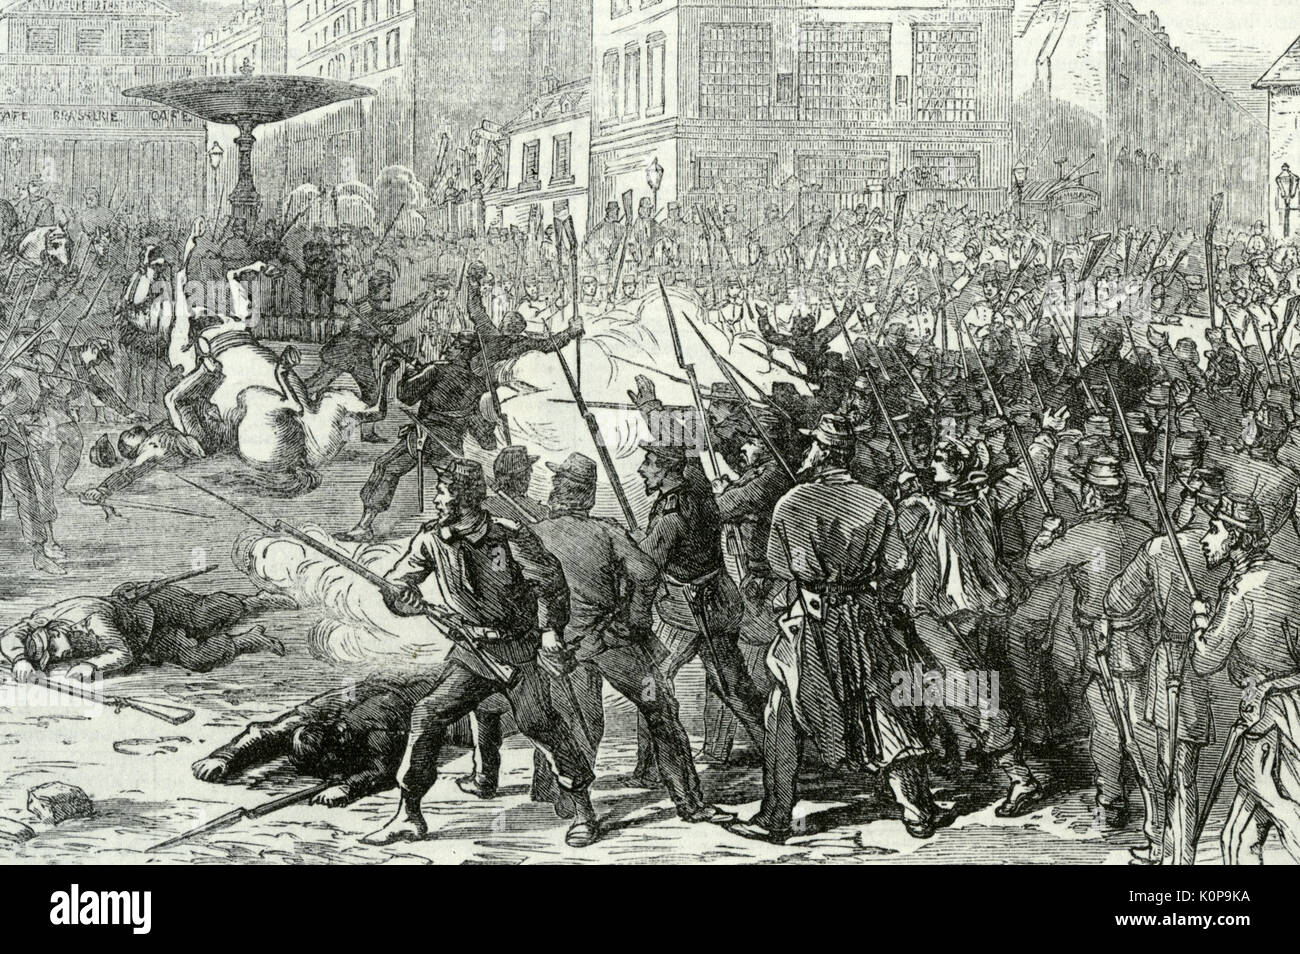 COMMUNE DE PARIS à mai 1871. Les combats à la Place Pigalle Sacré Coeur pendant la semaine sanglante 21-22 Mai Banque D'Images